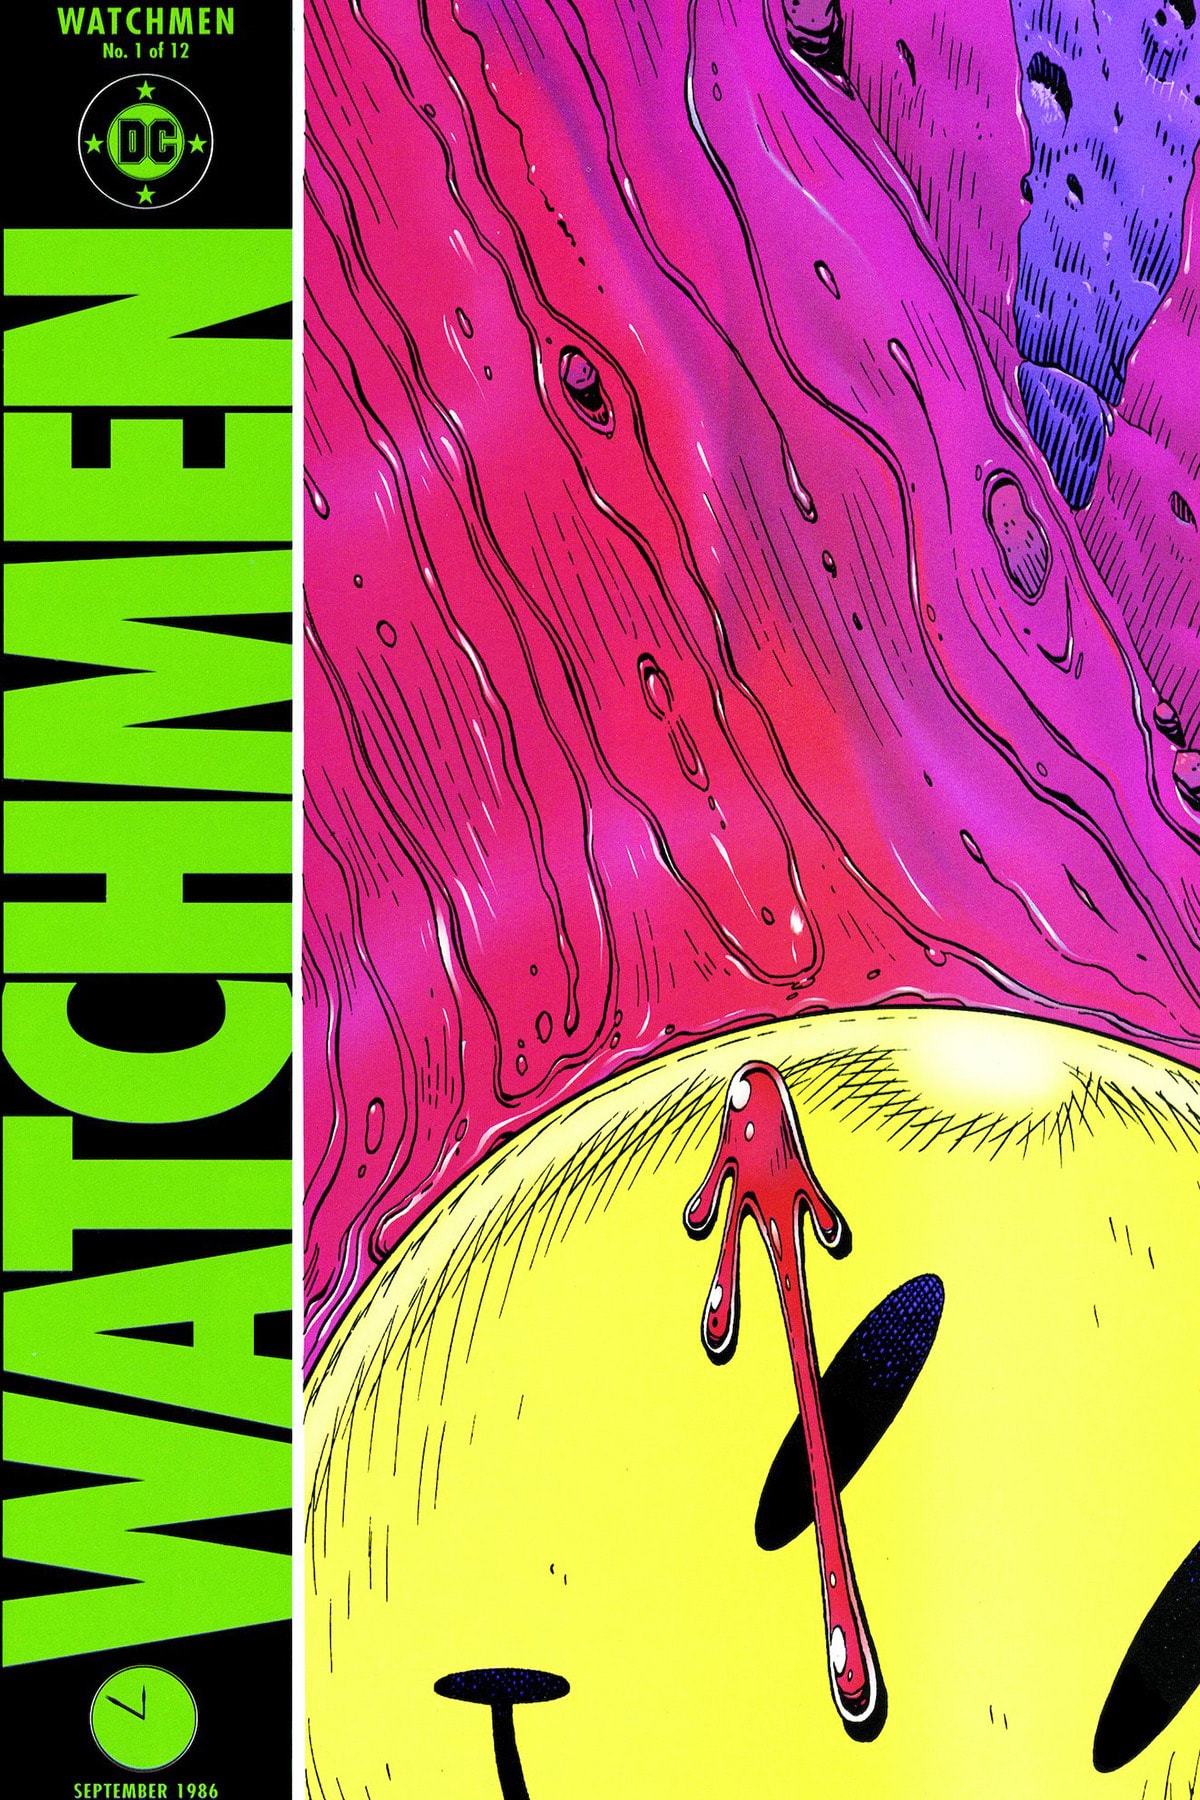 將厚重哲思嵌入「超級英雄」軀殼，Zack Snyder 執導的《Watchmen》為何會被奉為「神作」？